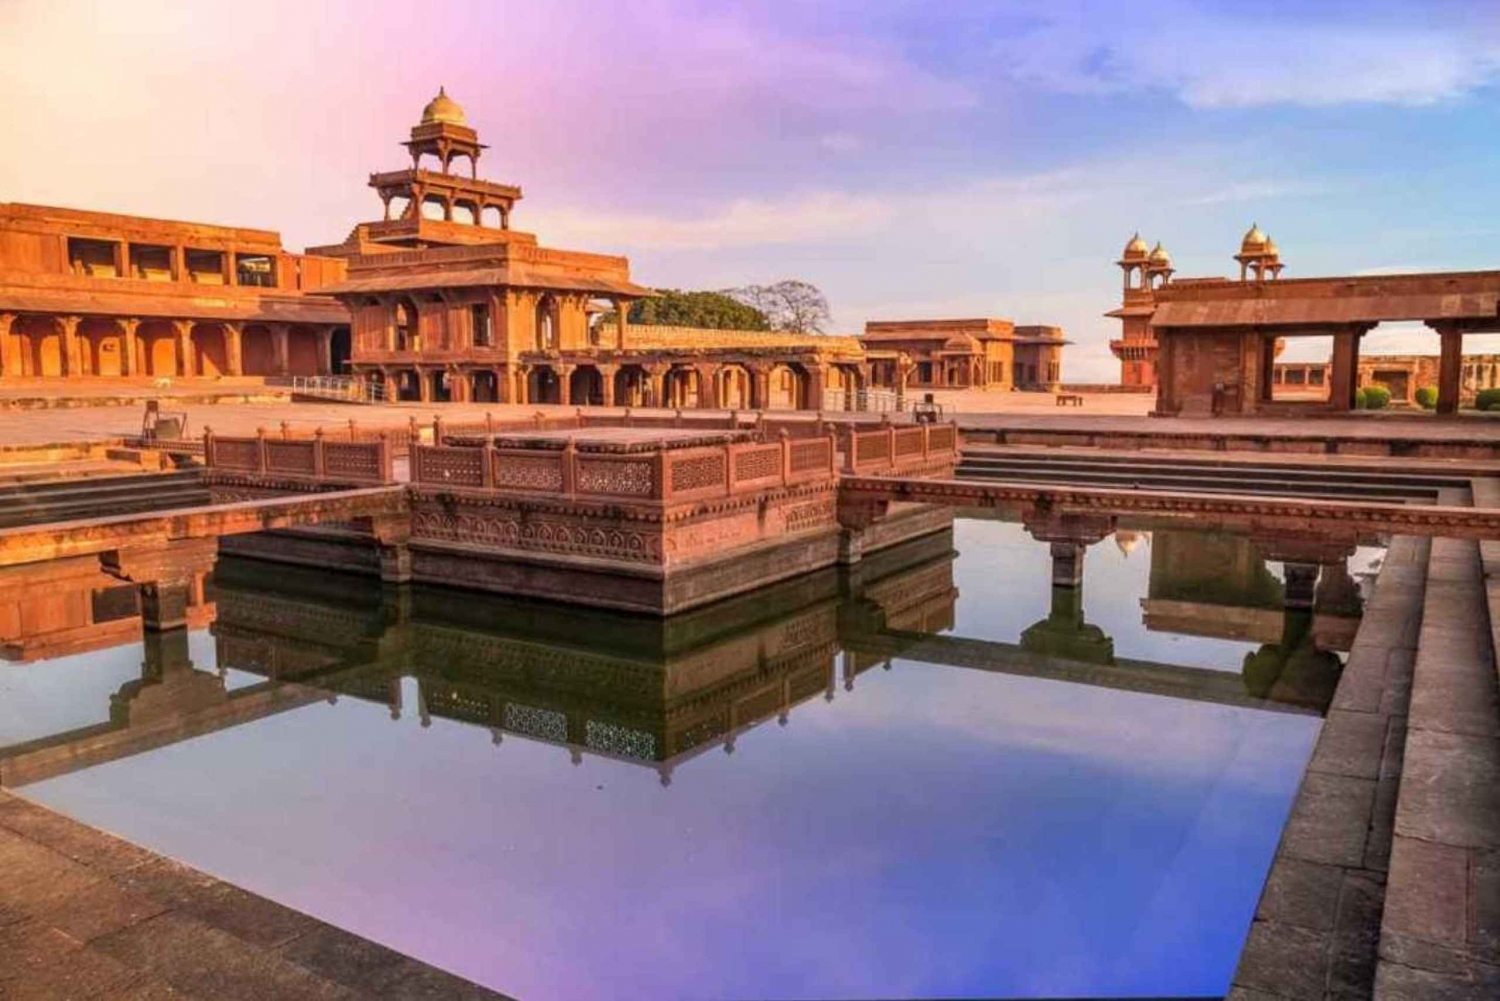 Siirto kohteesta Jaipur kohteeseen Agra Fatehpur Sikrin kautta